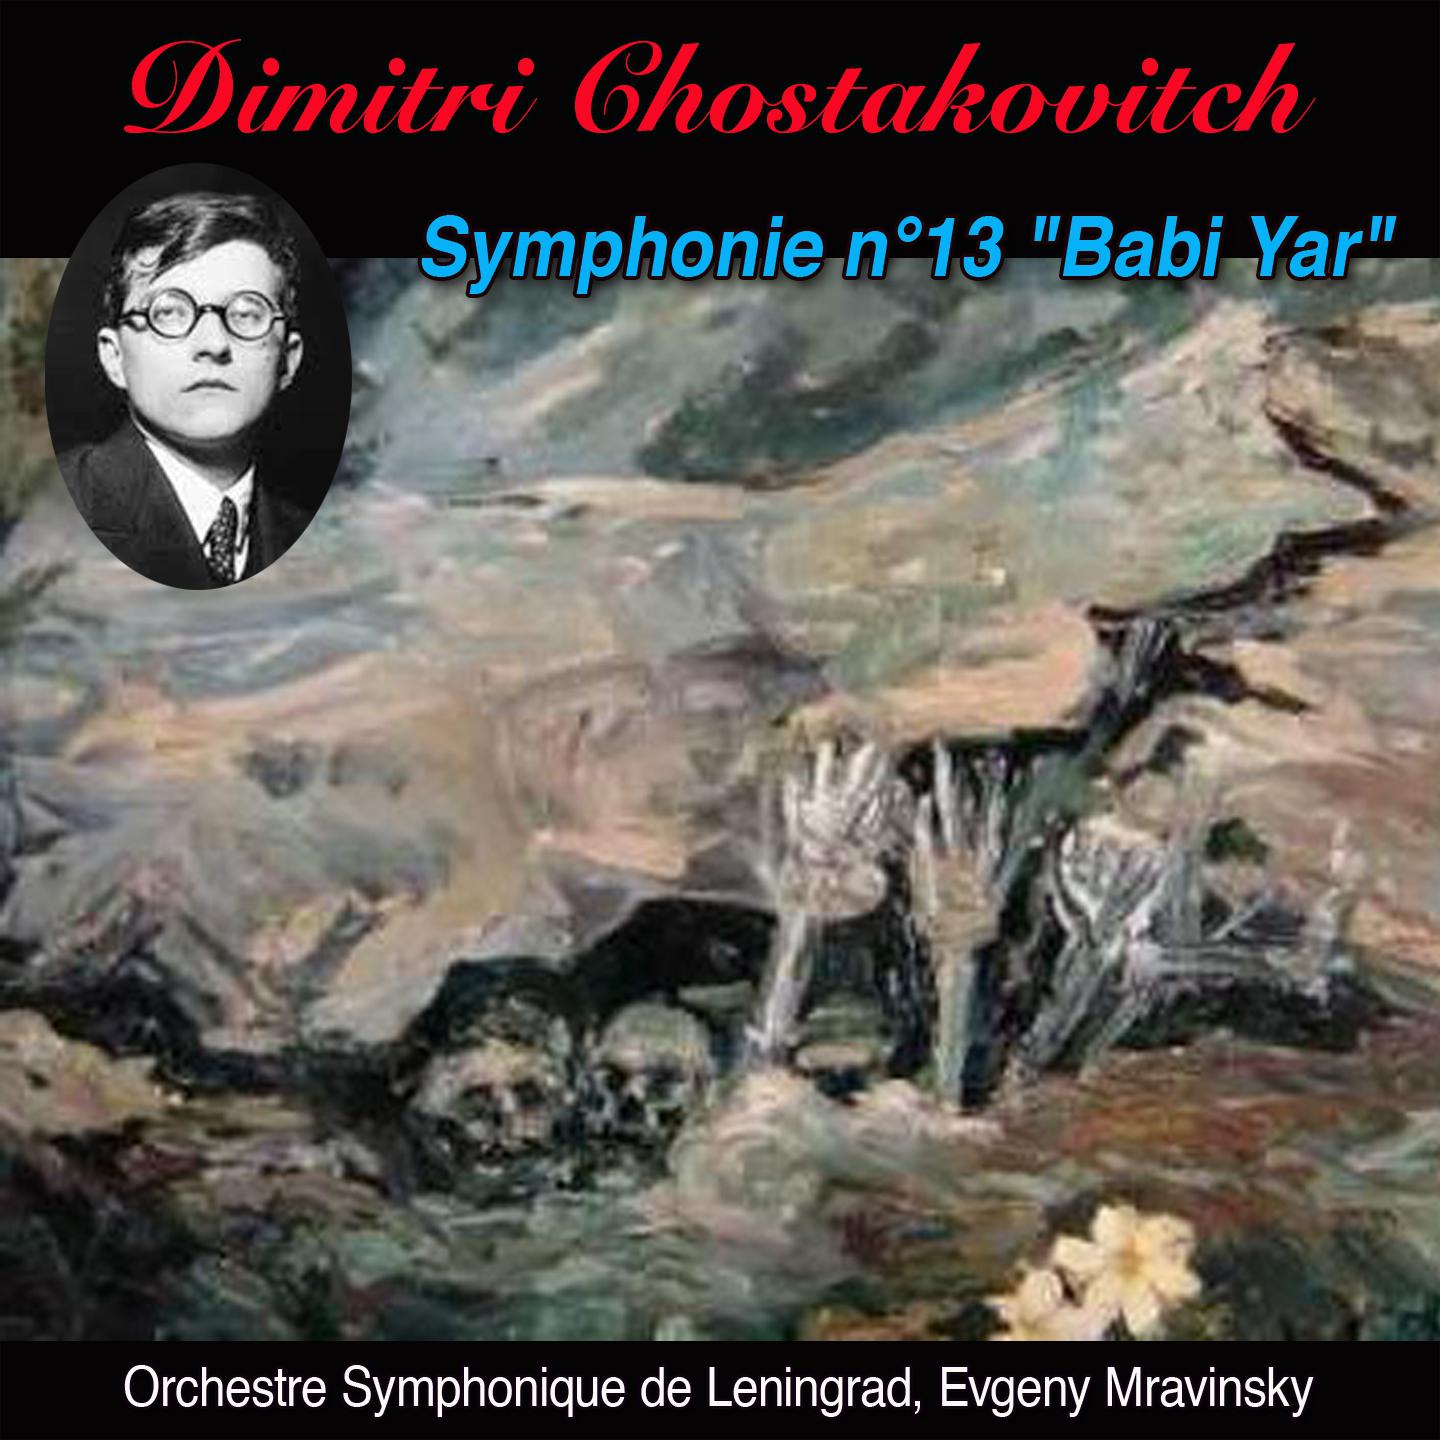 Babi yar adagio Symphonie n 13 op. 113 " Babi yar"